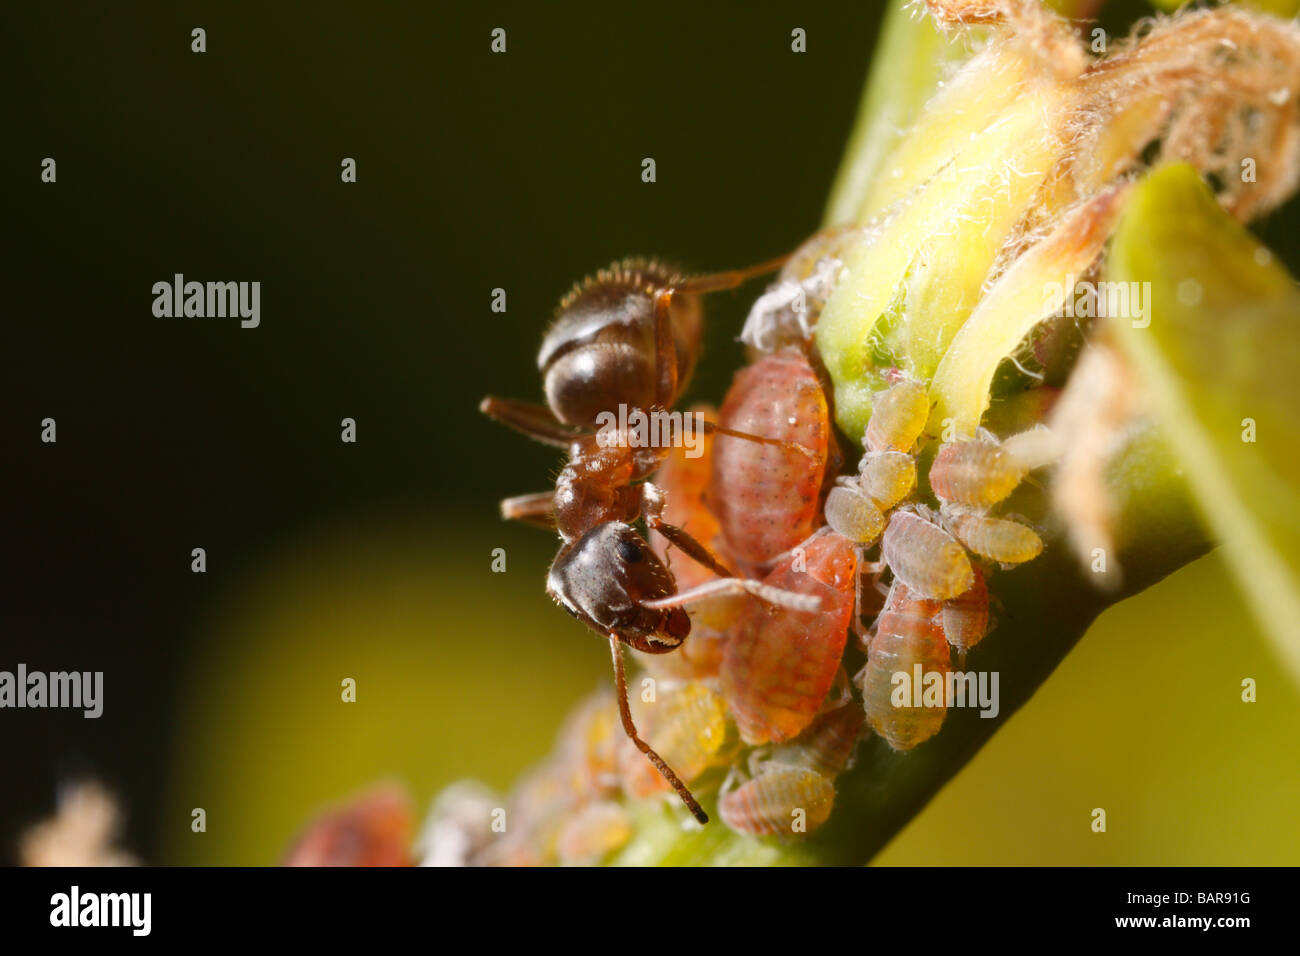 (Hormiga Lasius niger, hormiga negra de jardín) un pulgón de ordeño. Ellos cosechan melaza de esta manera. Foto de stock